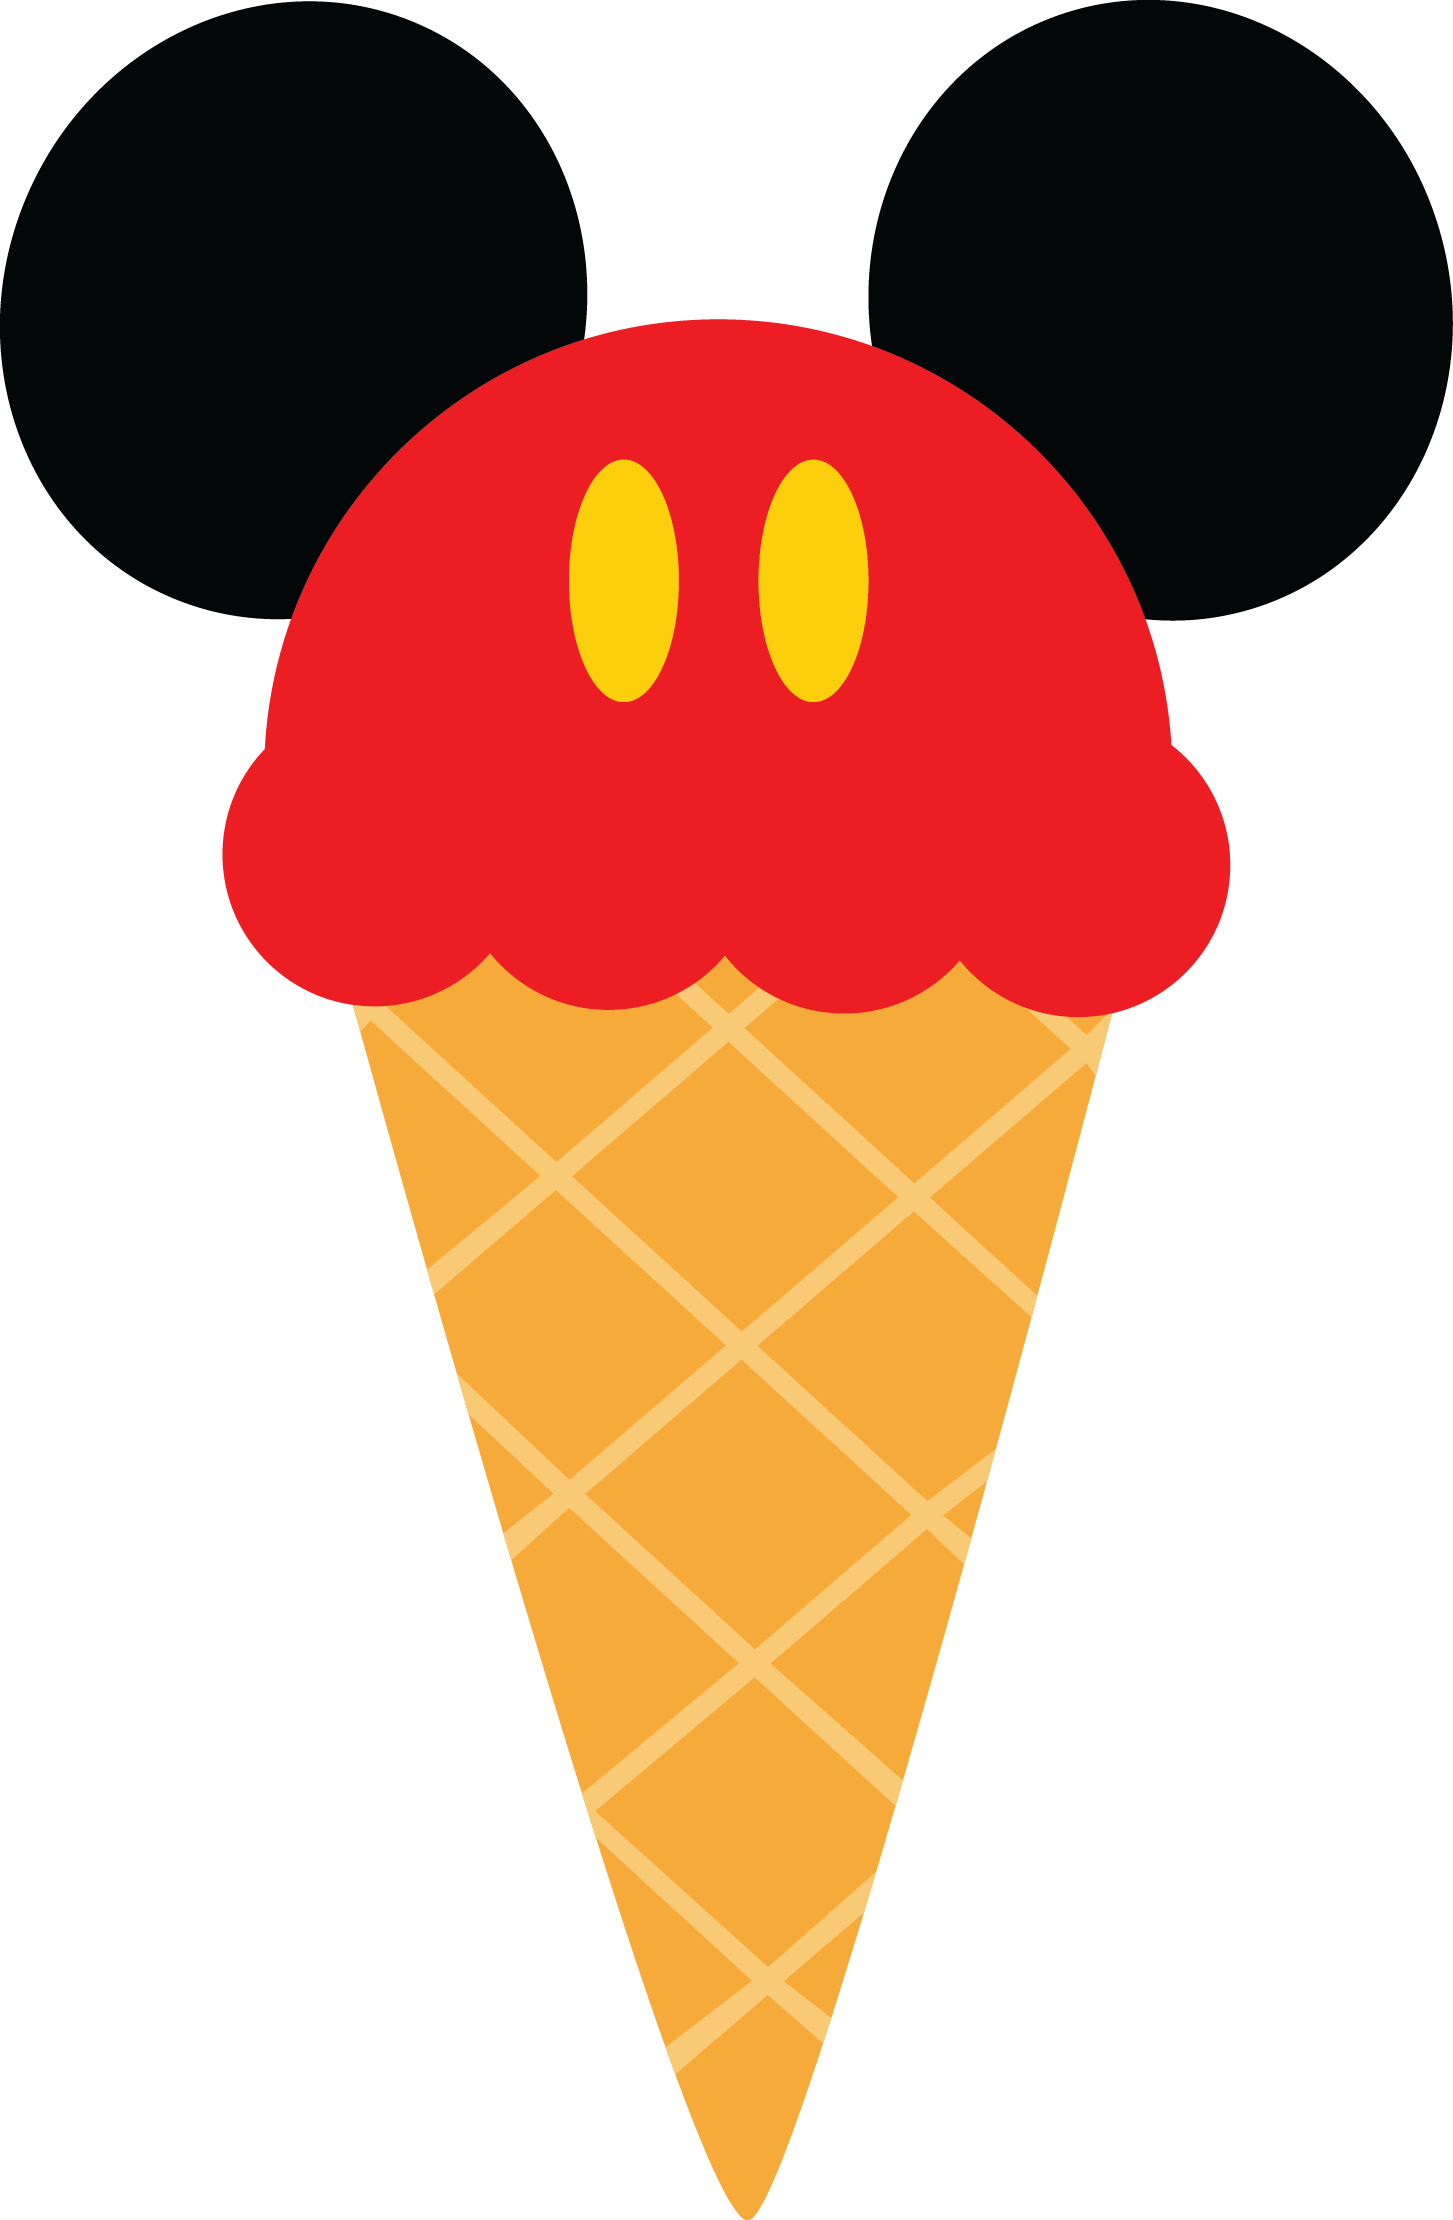 Mickey mouse logo cone cono con calzones rojos Blank Meme Template